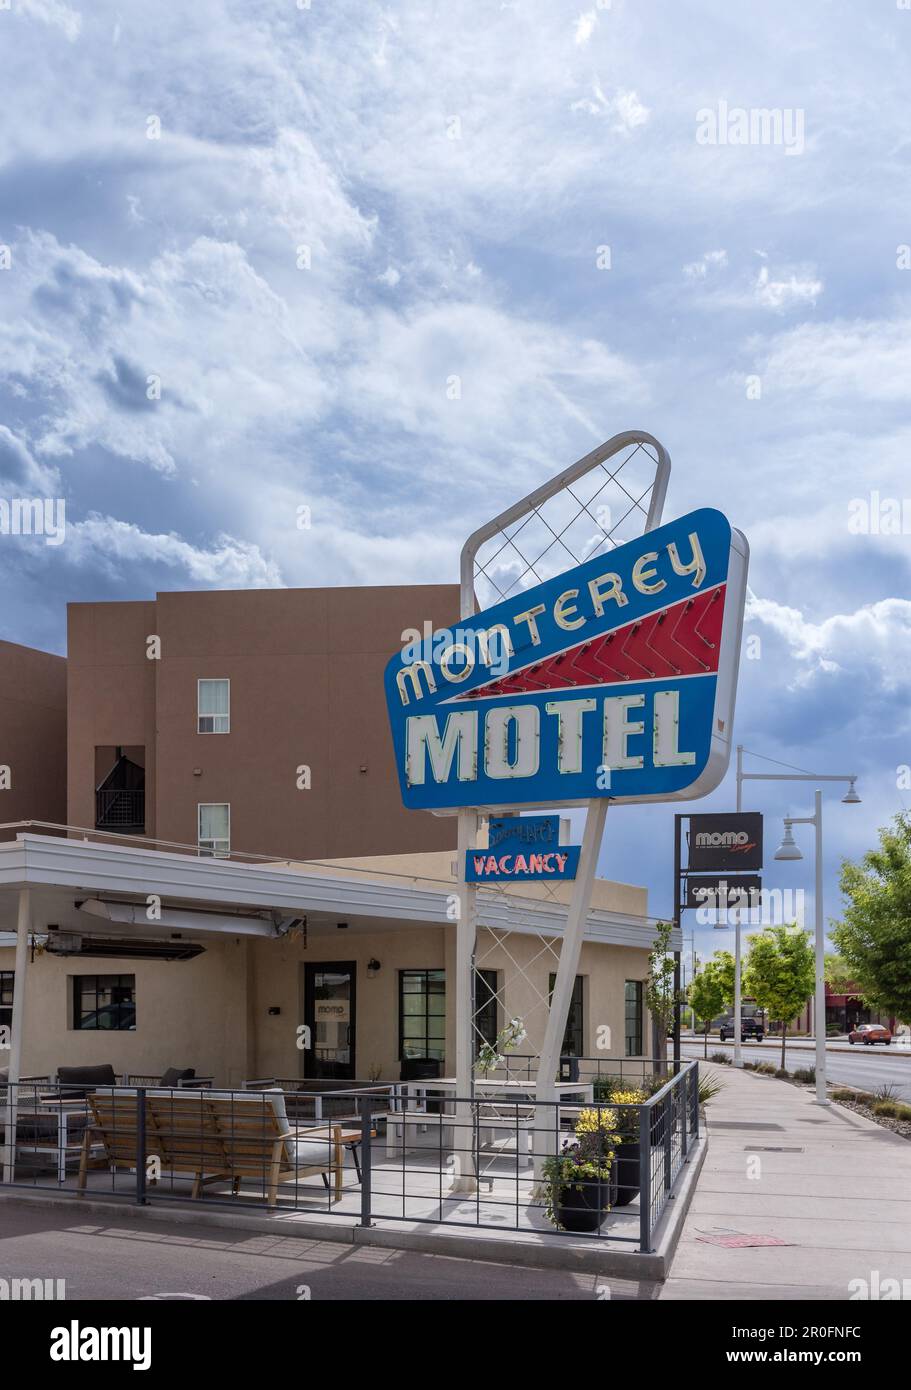 Extérieur de Monterey Motel, un Motor inn rénové construit sur la route 66 dans la vieille ville, Albuquerque, Nouveau-Mexique. Banque D'Images